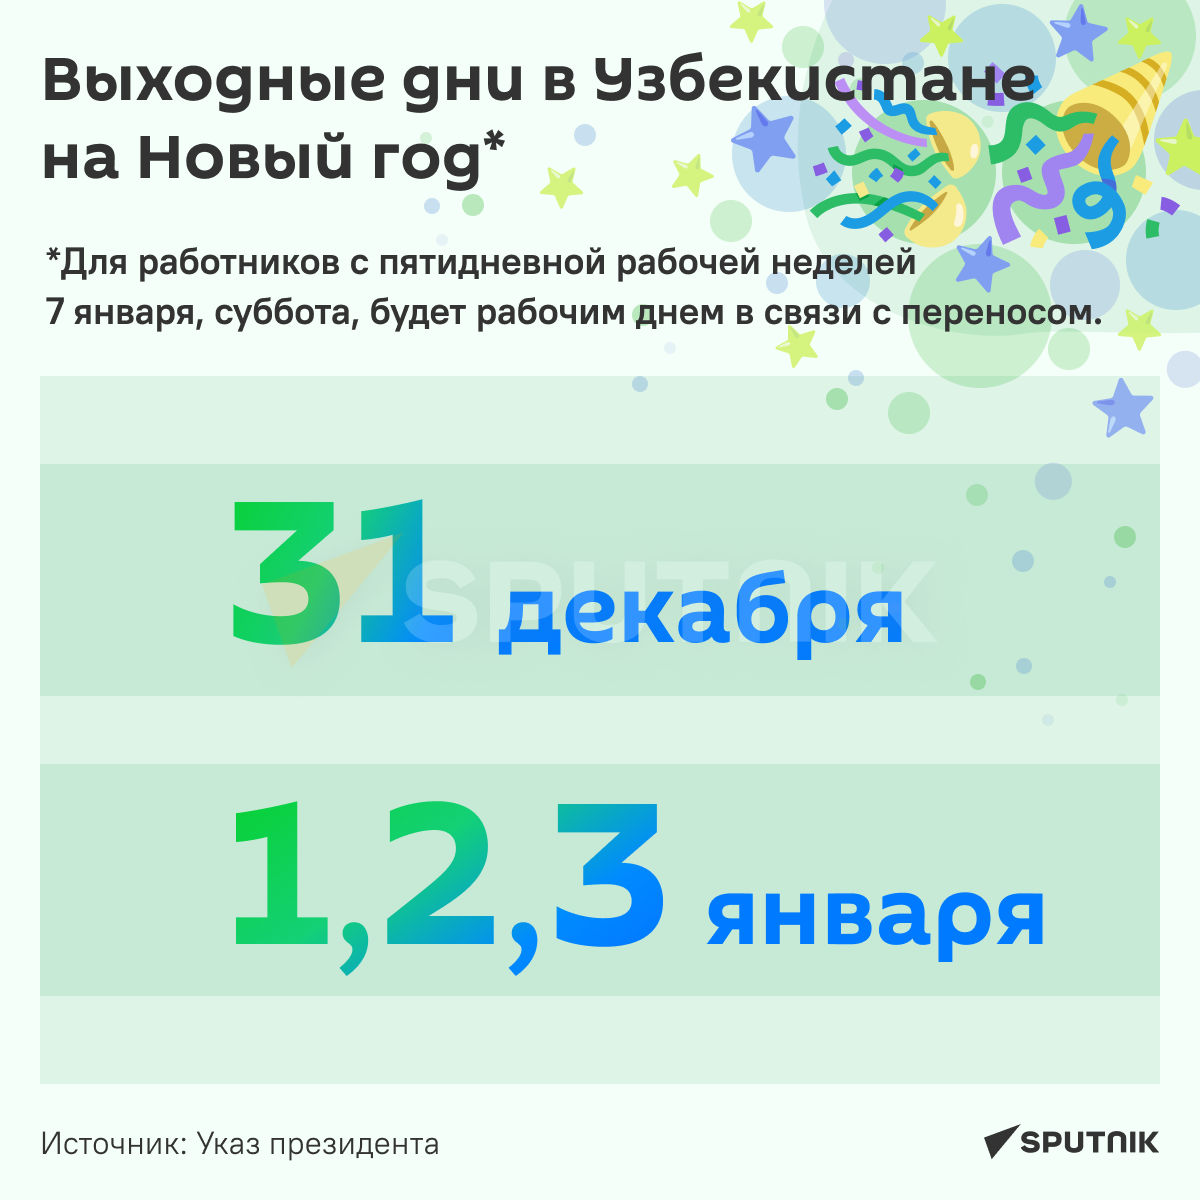 Выходные дни в Узбекистане на Новый Год инфографика - Sputnik Узбекистан